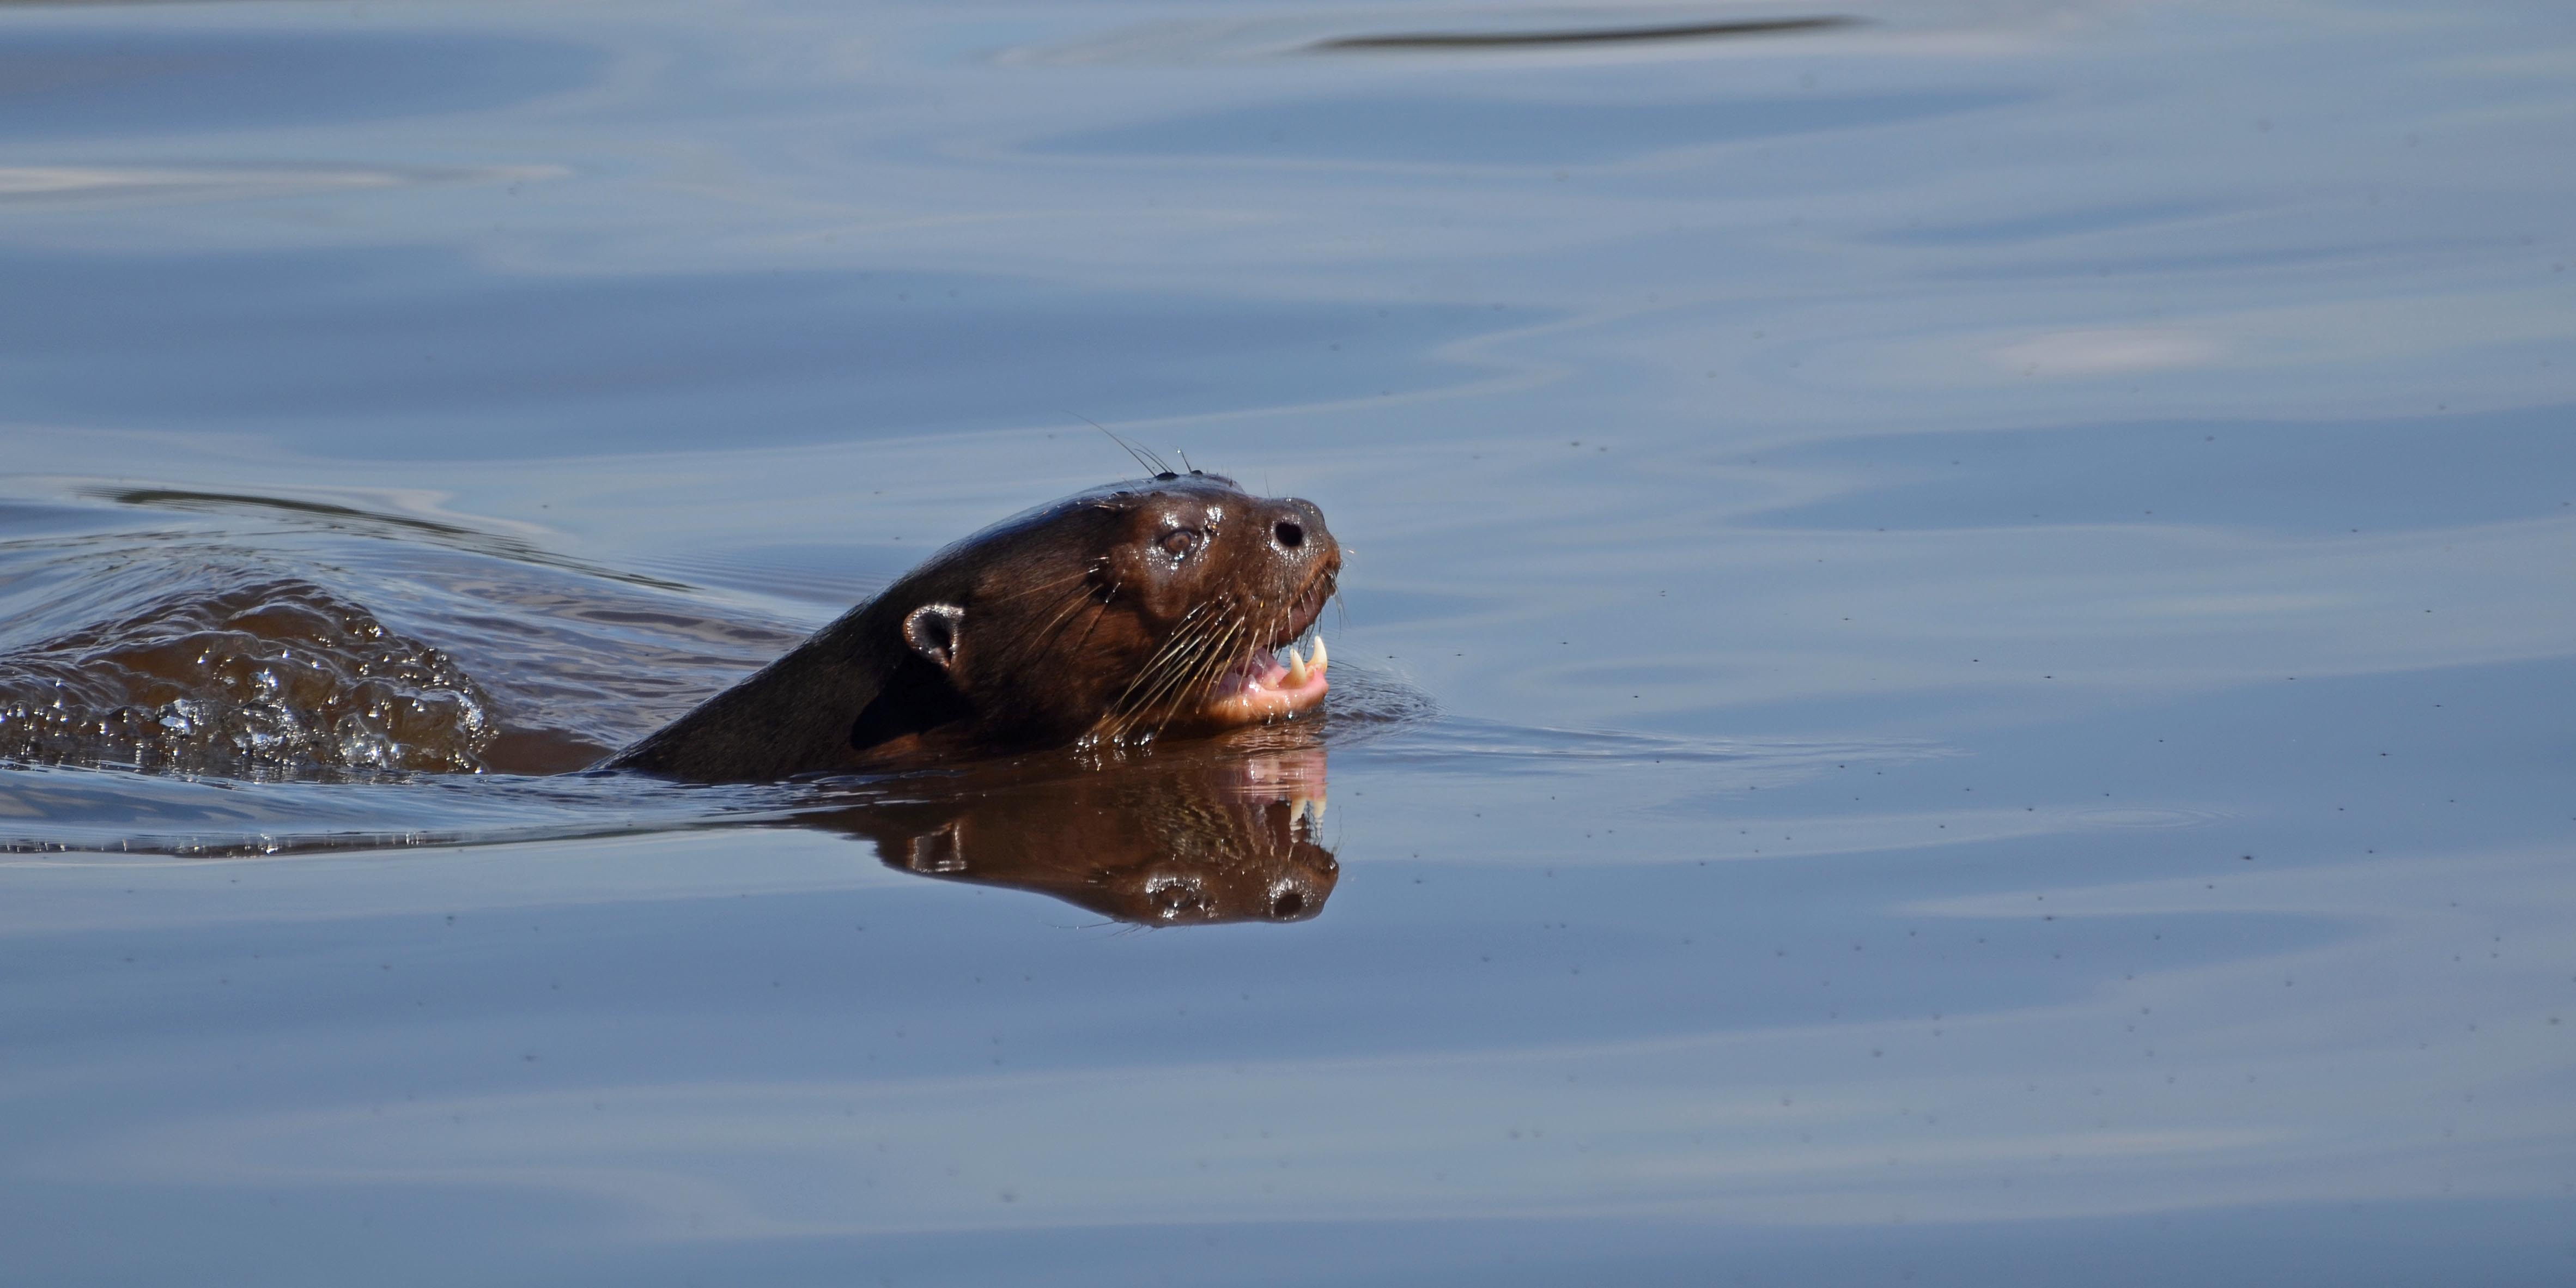 Giant River Otter swimming